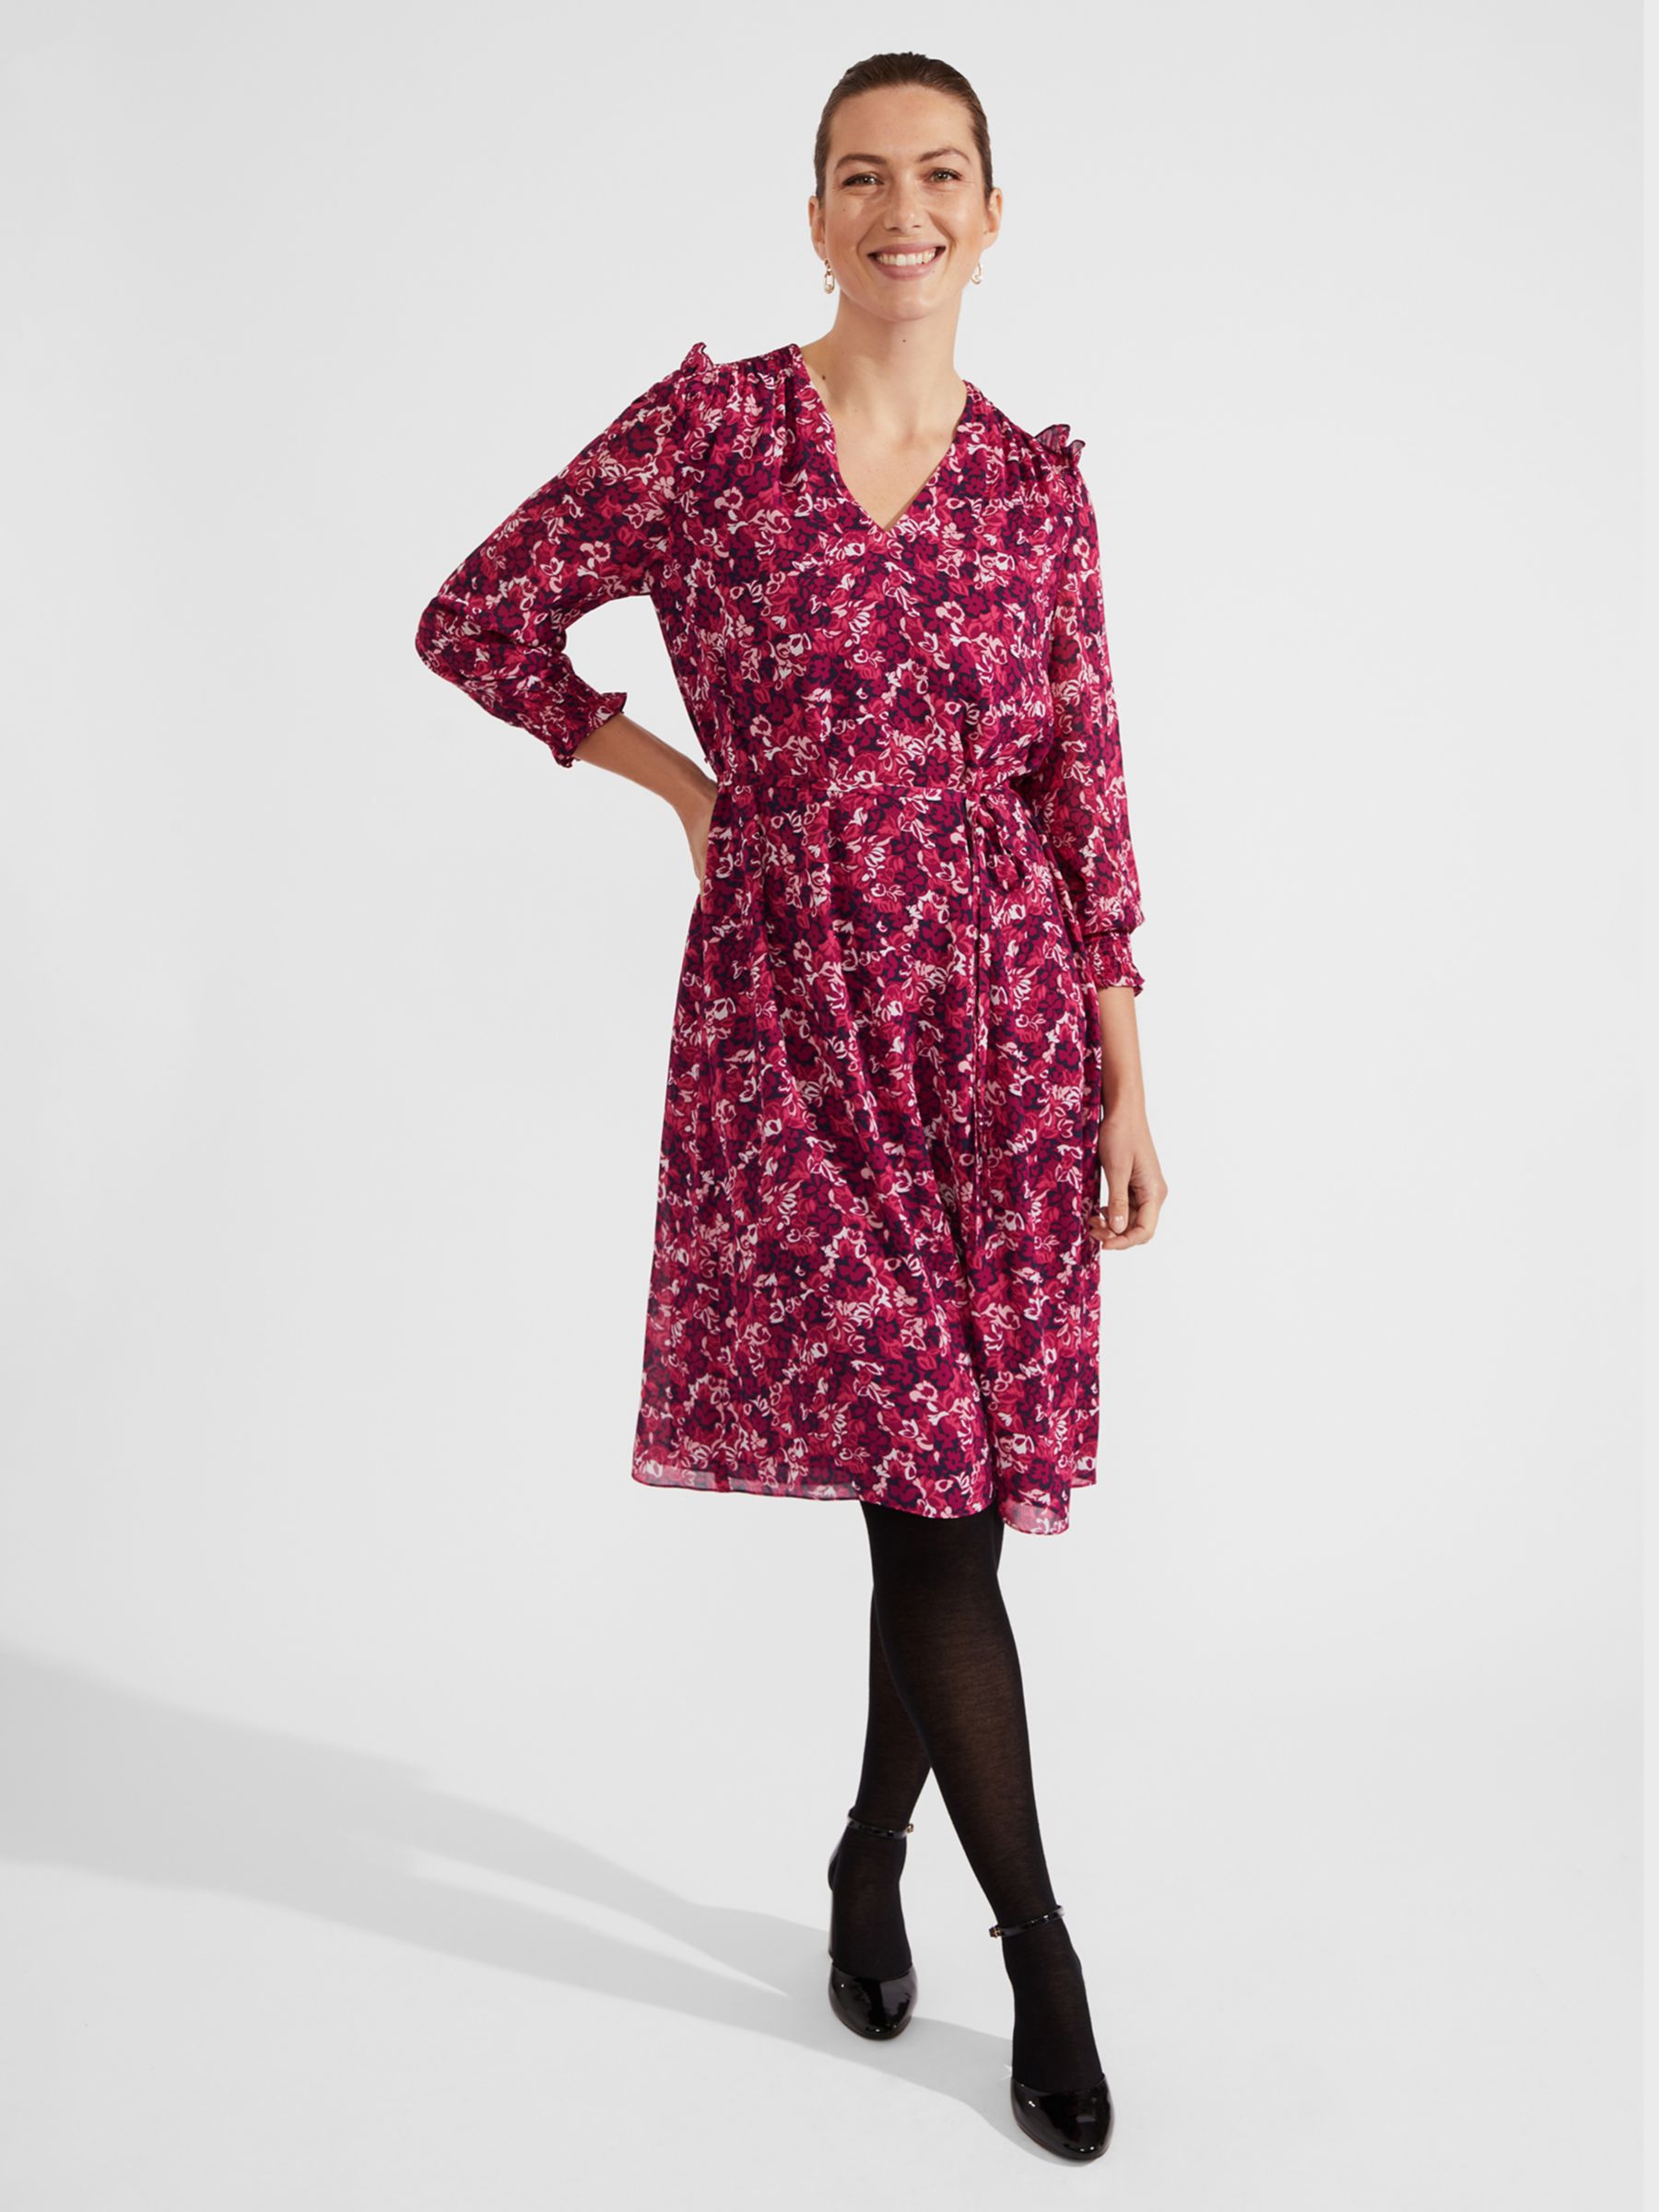 Hobbs Petite Elaina Leaf Print Dress, Purple/Multi, 10